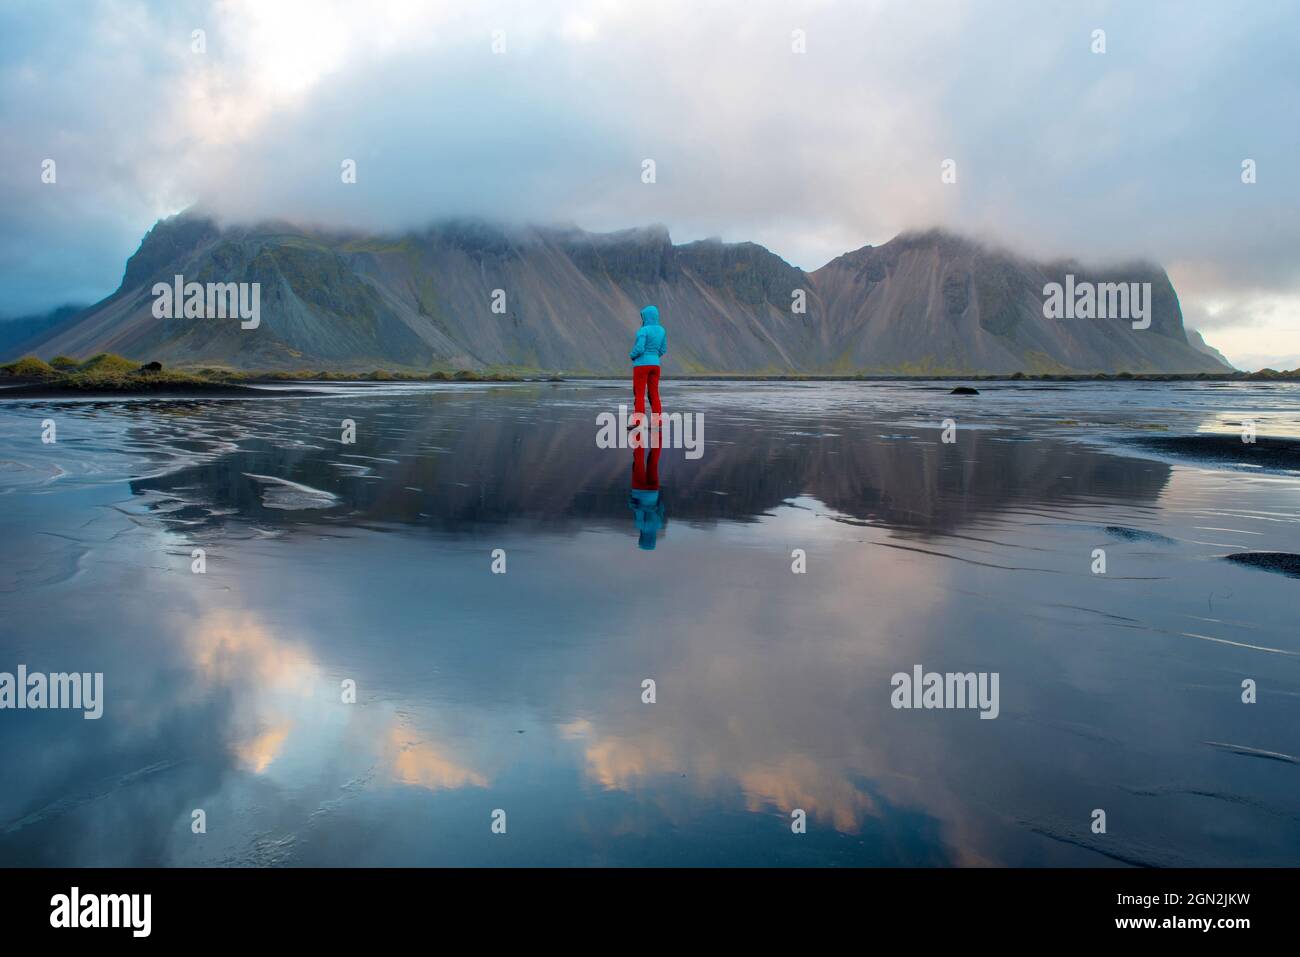 Paysage islandais, reflet d'une femme treking et de la montagne Vestrahorn dans les eaux de l'océan Atlantique. Péninsule de Stokksnes, Hofn, Icel Banque D'Images